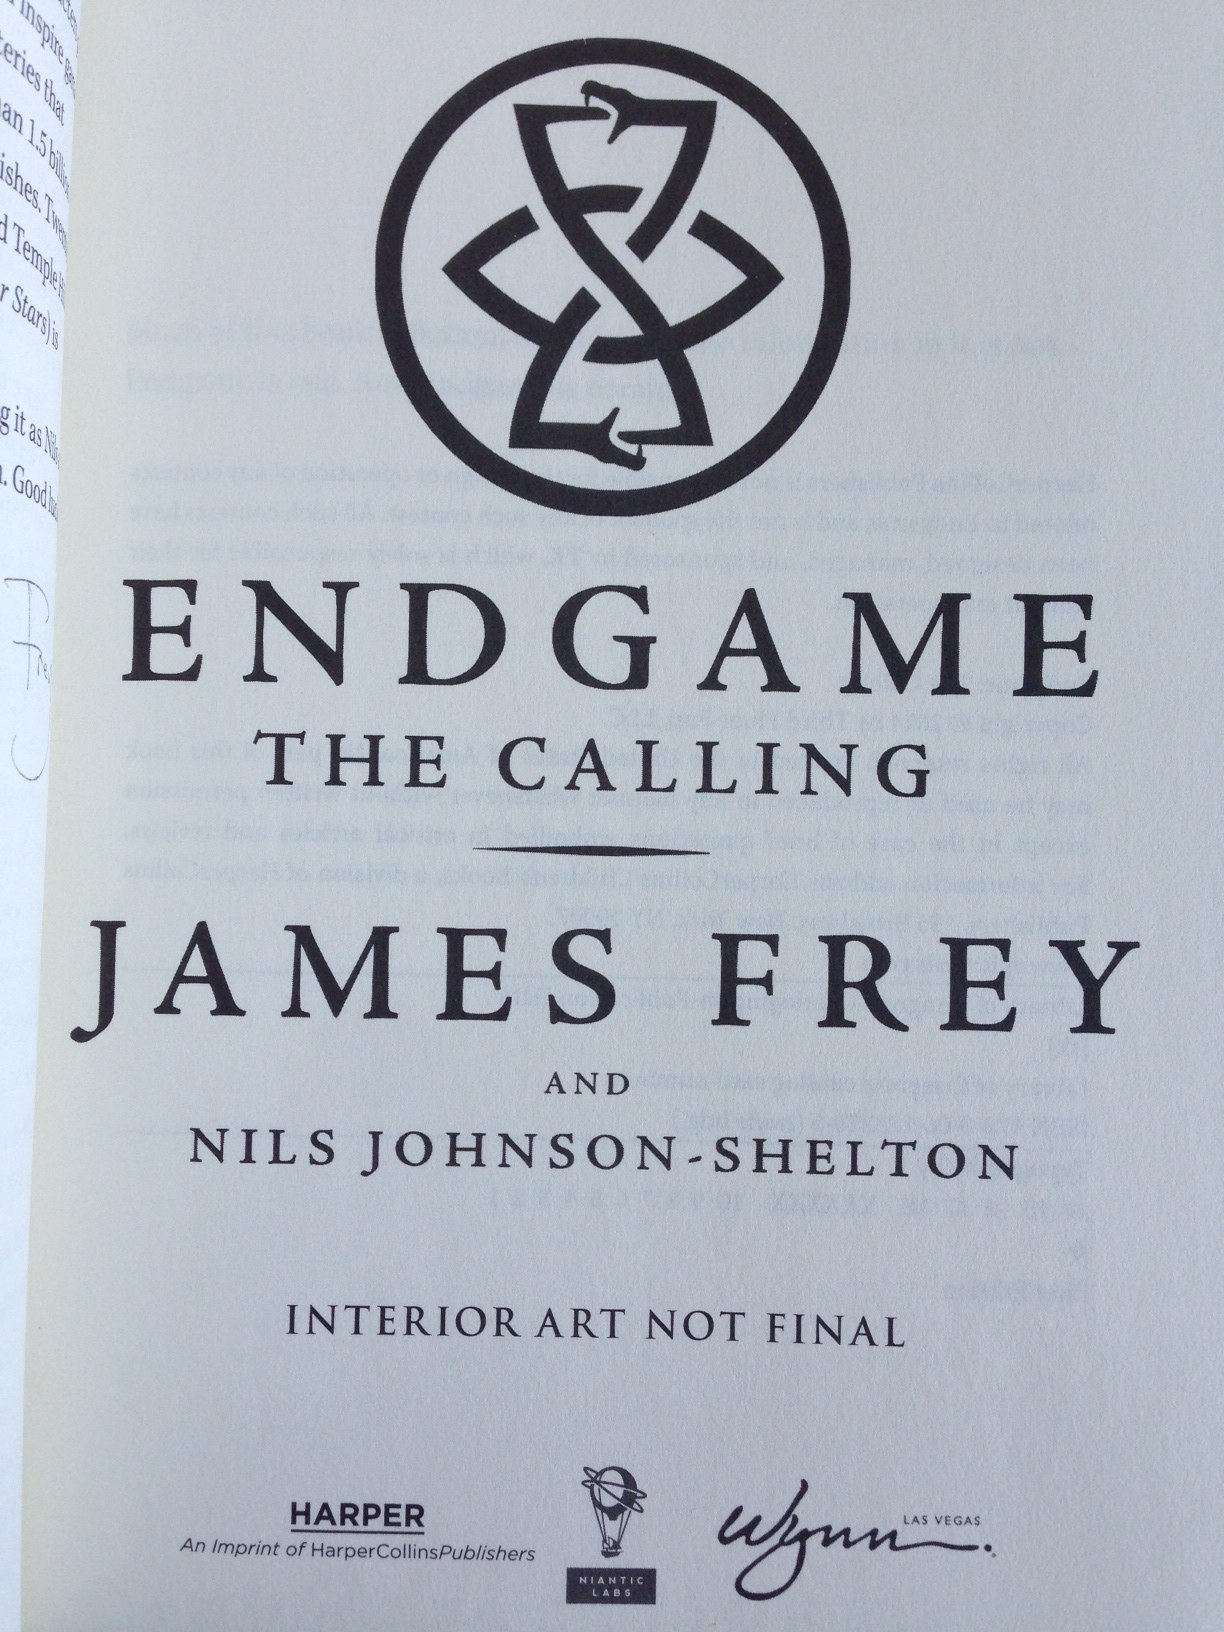 Livros Endgame - James frey